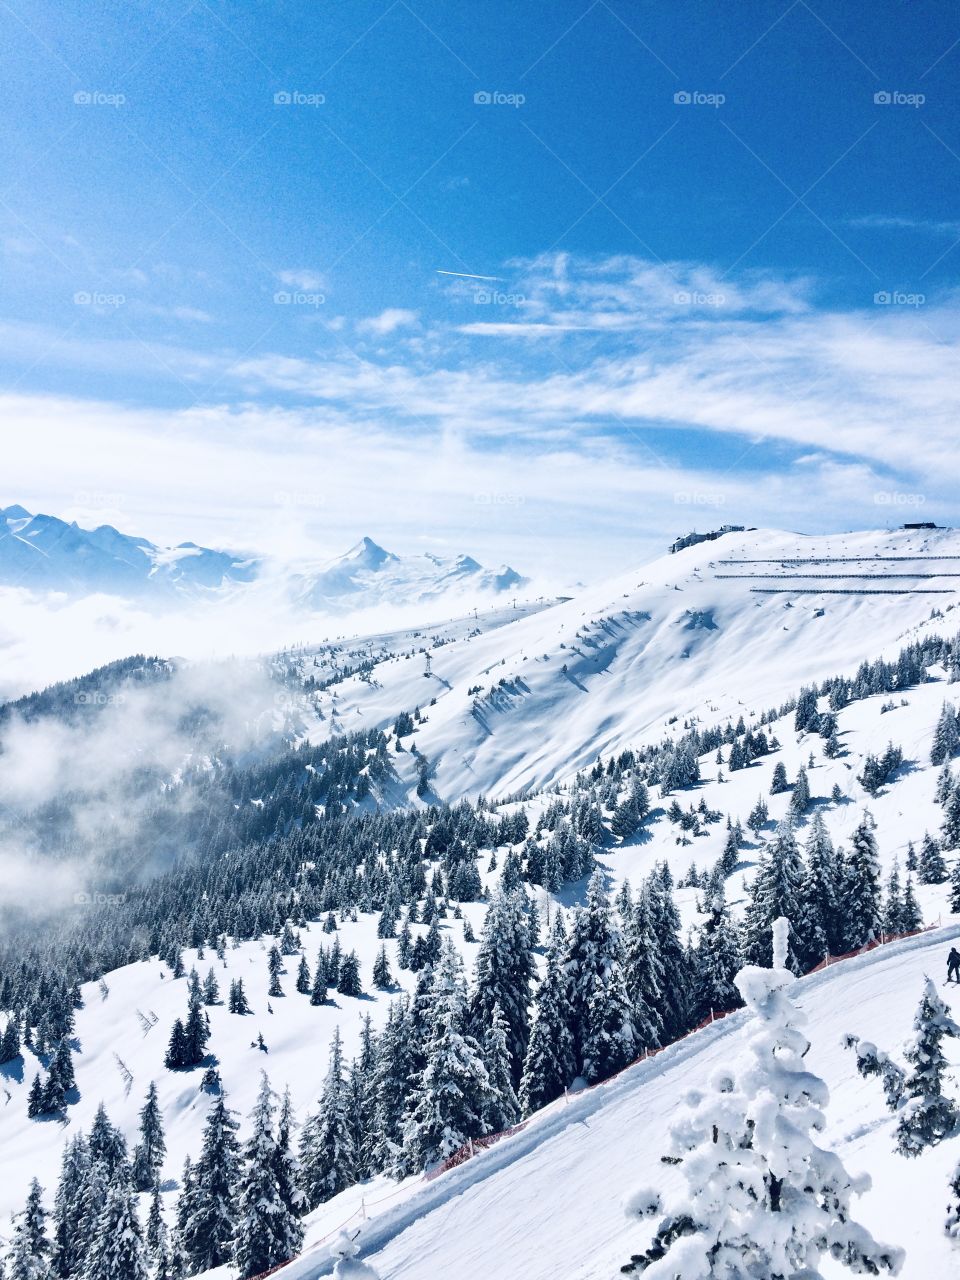 Snowy mountain landscape - winter wonderland in Austria 